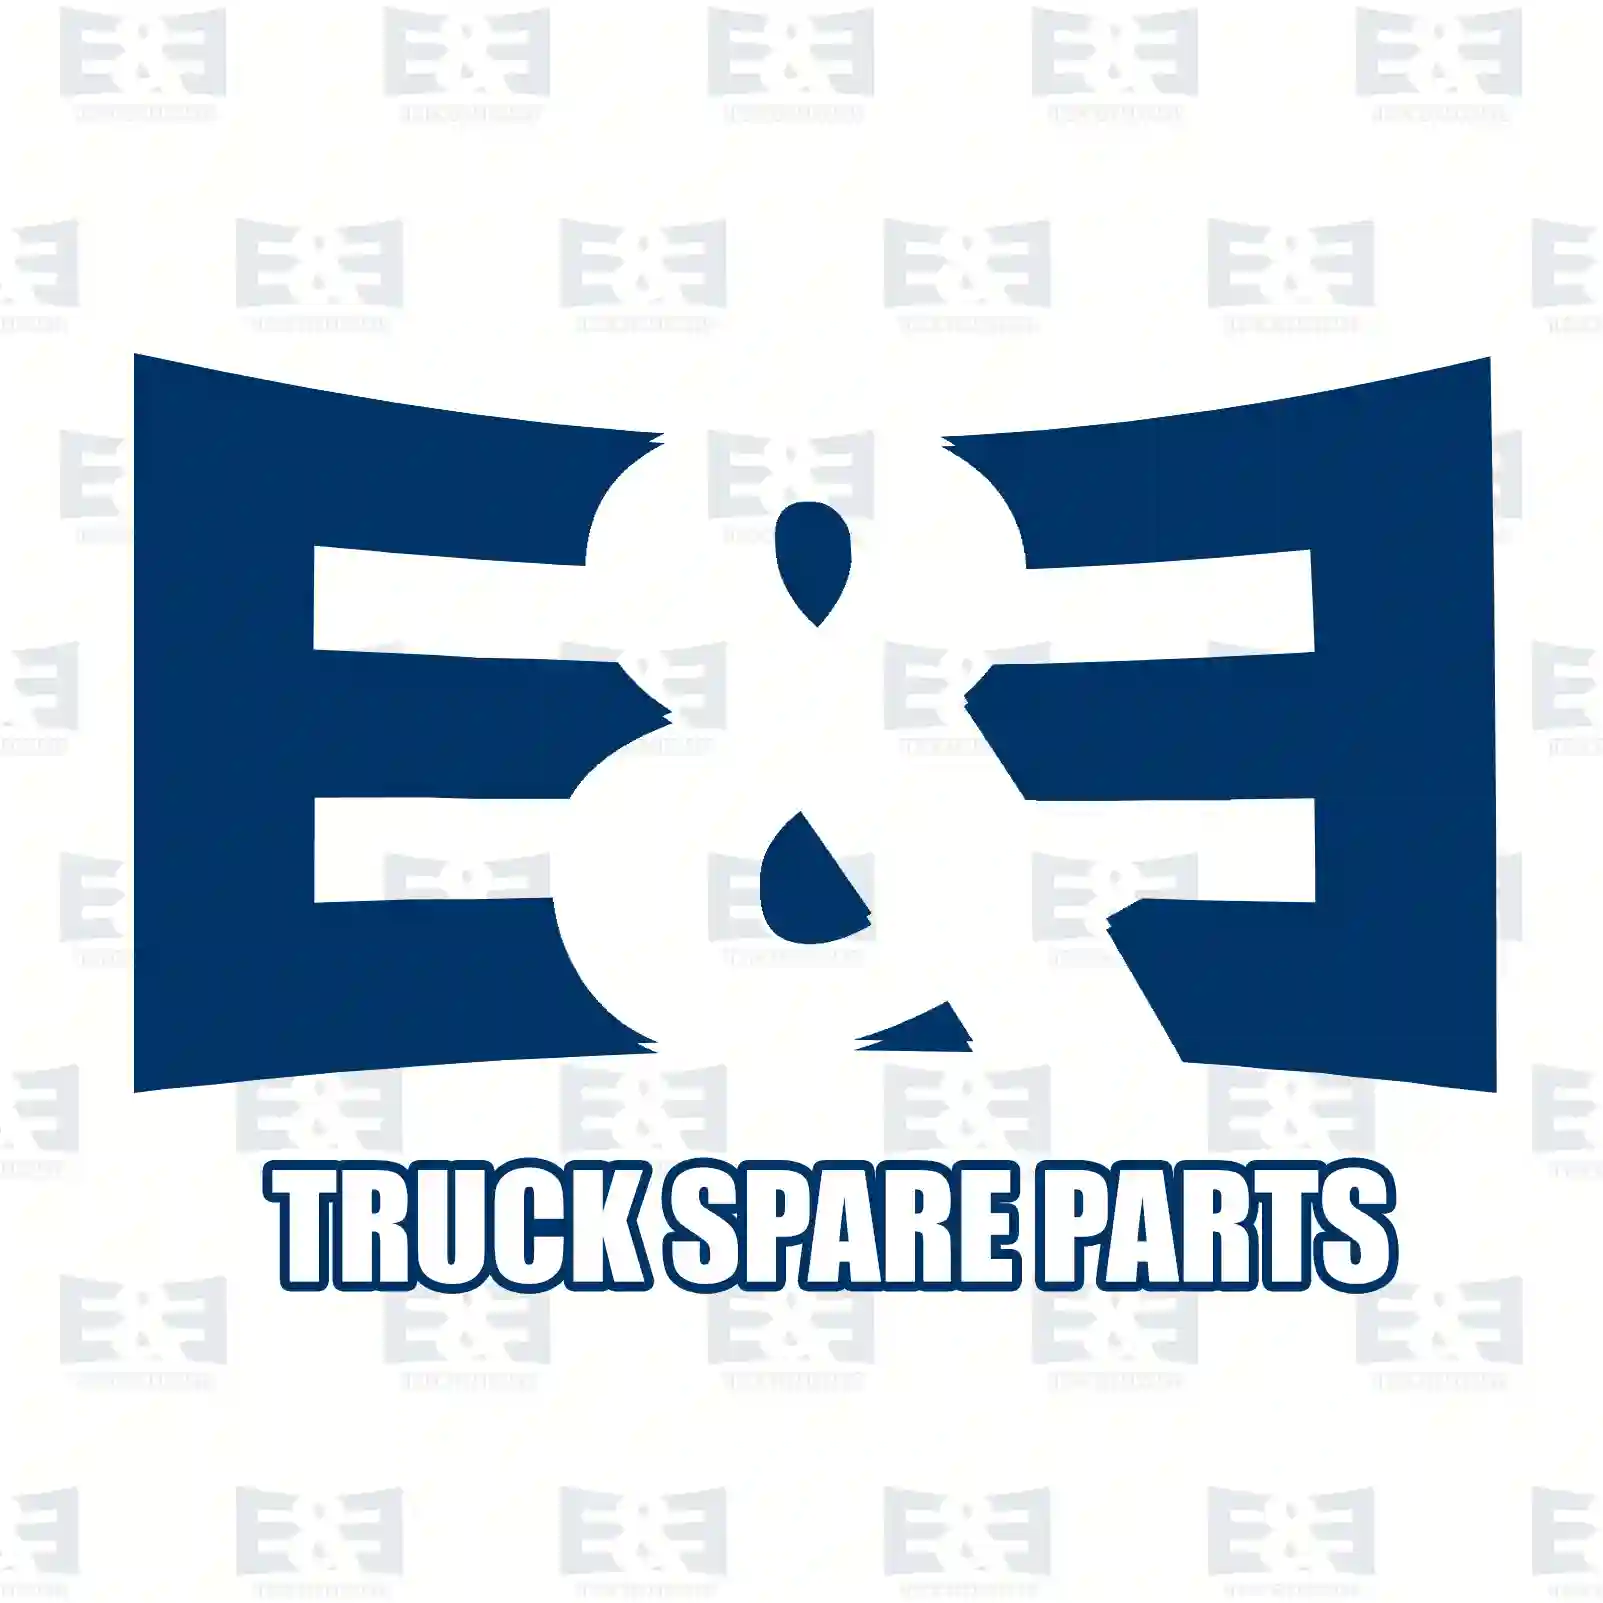 Brake disc, 2E2296321, 93168847, 43206-00Q0B, 4421080, 432064087R, 7485123974, , , , ||  2E2296321 E&E Truck Spare Parts | Truck Spare Parts, Auotomotive Spare Parts Brake disc, 2E2296321, 93168847, 43206-00Q0B, 4421080, 432064087R, 7485123974, , , , ||  2E2296321 E&E Truck Spare Parts | Truck Spare Parts, Auotomotive Spare Parts